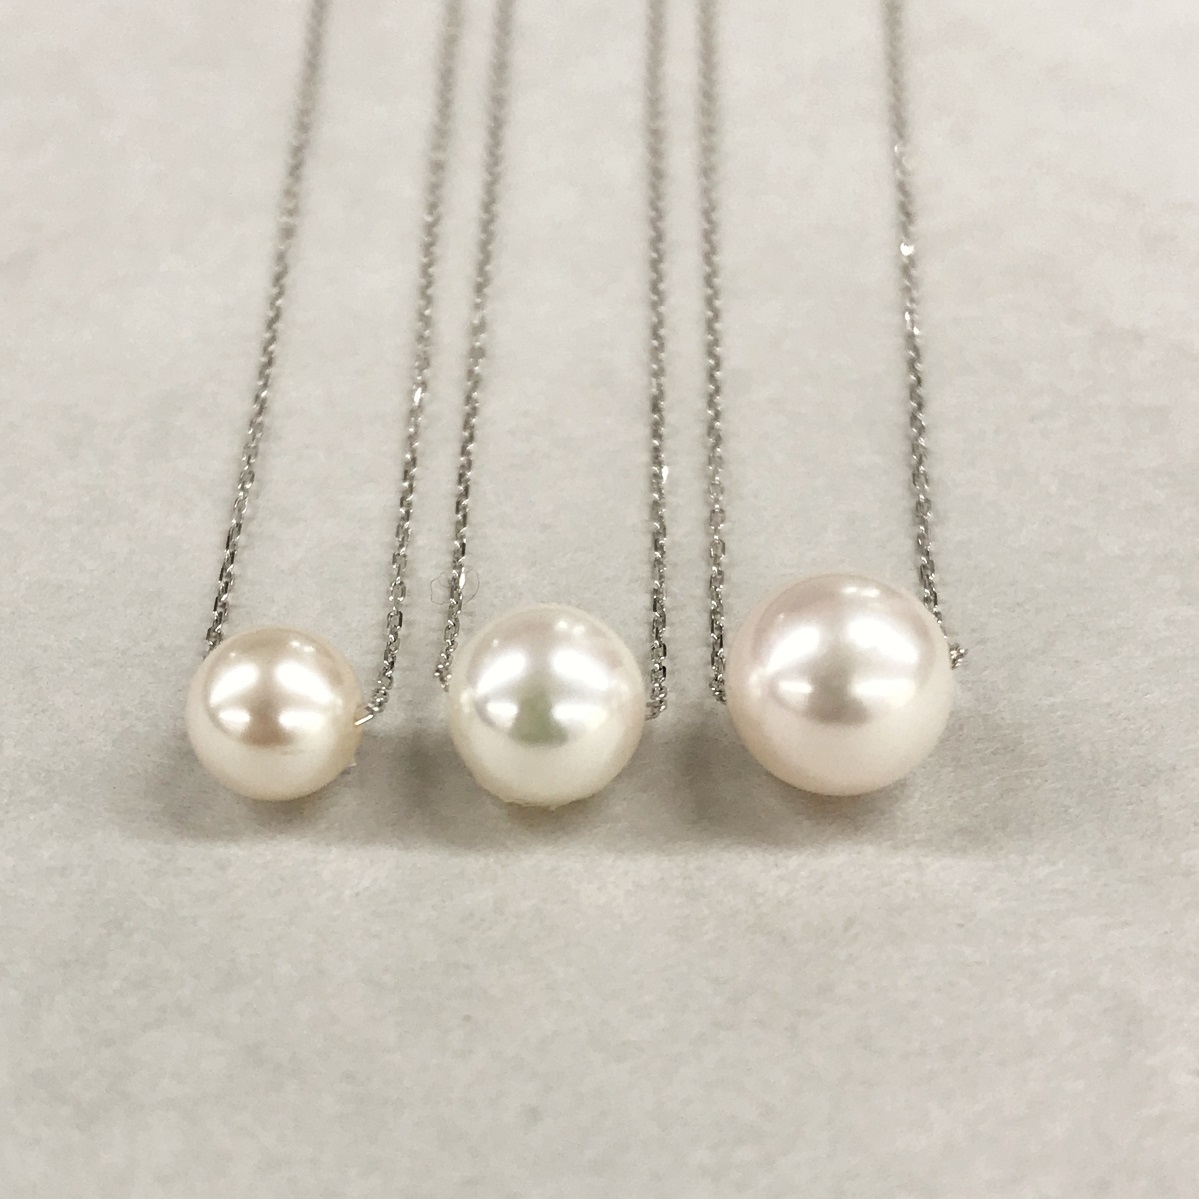 3つの大きさから自分に合ったサイズを選べる アコヤ真珠ネックレス | TODAY's DIAMONDS TSUTSUMI